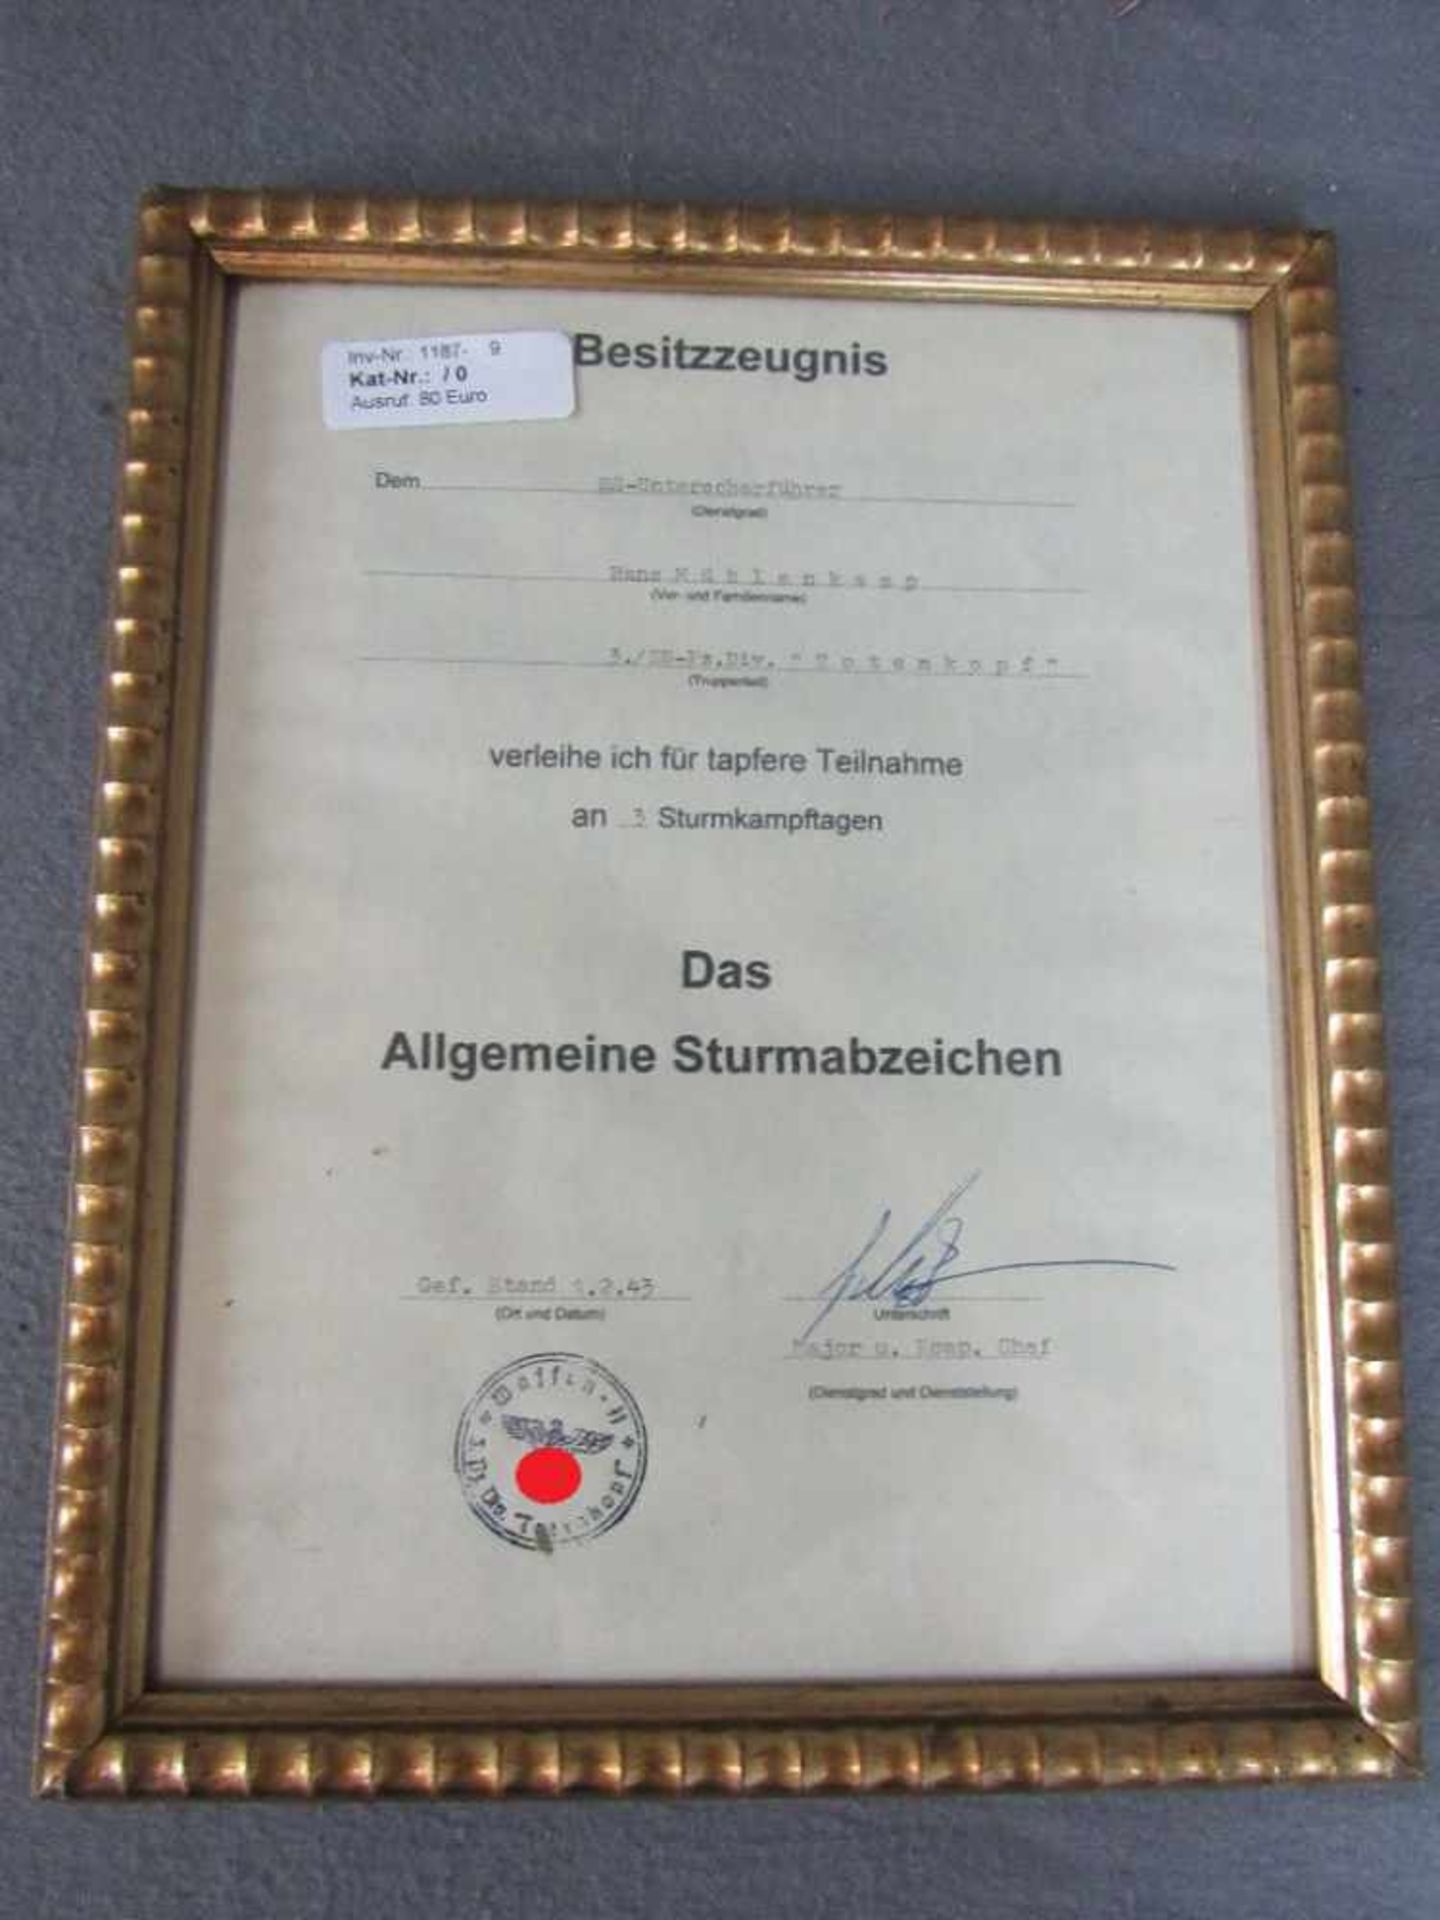 Besitzzeugnis für SS Unterscharfführer Totenkopf für allgemeine Sturmabzeichen im Rahmen